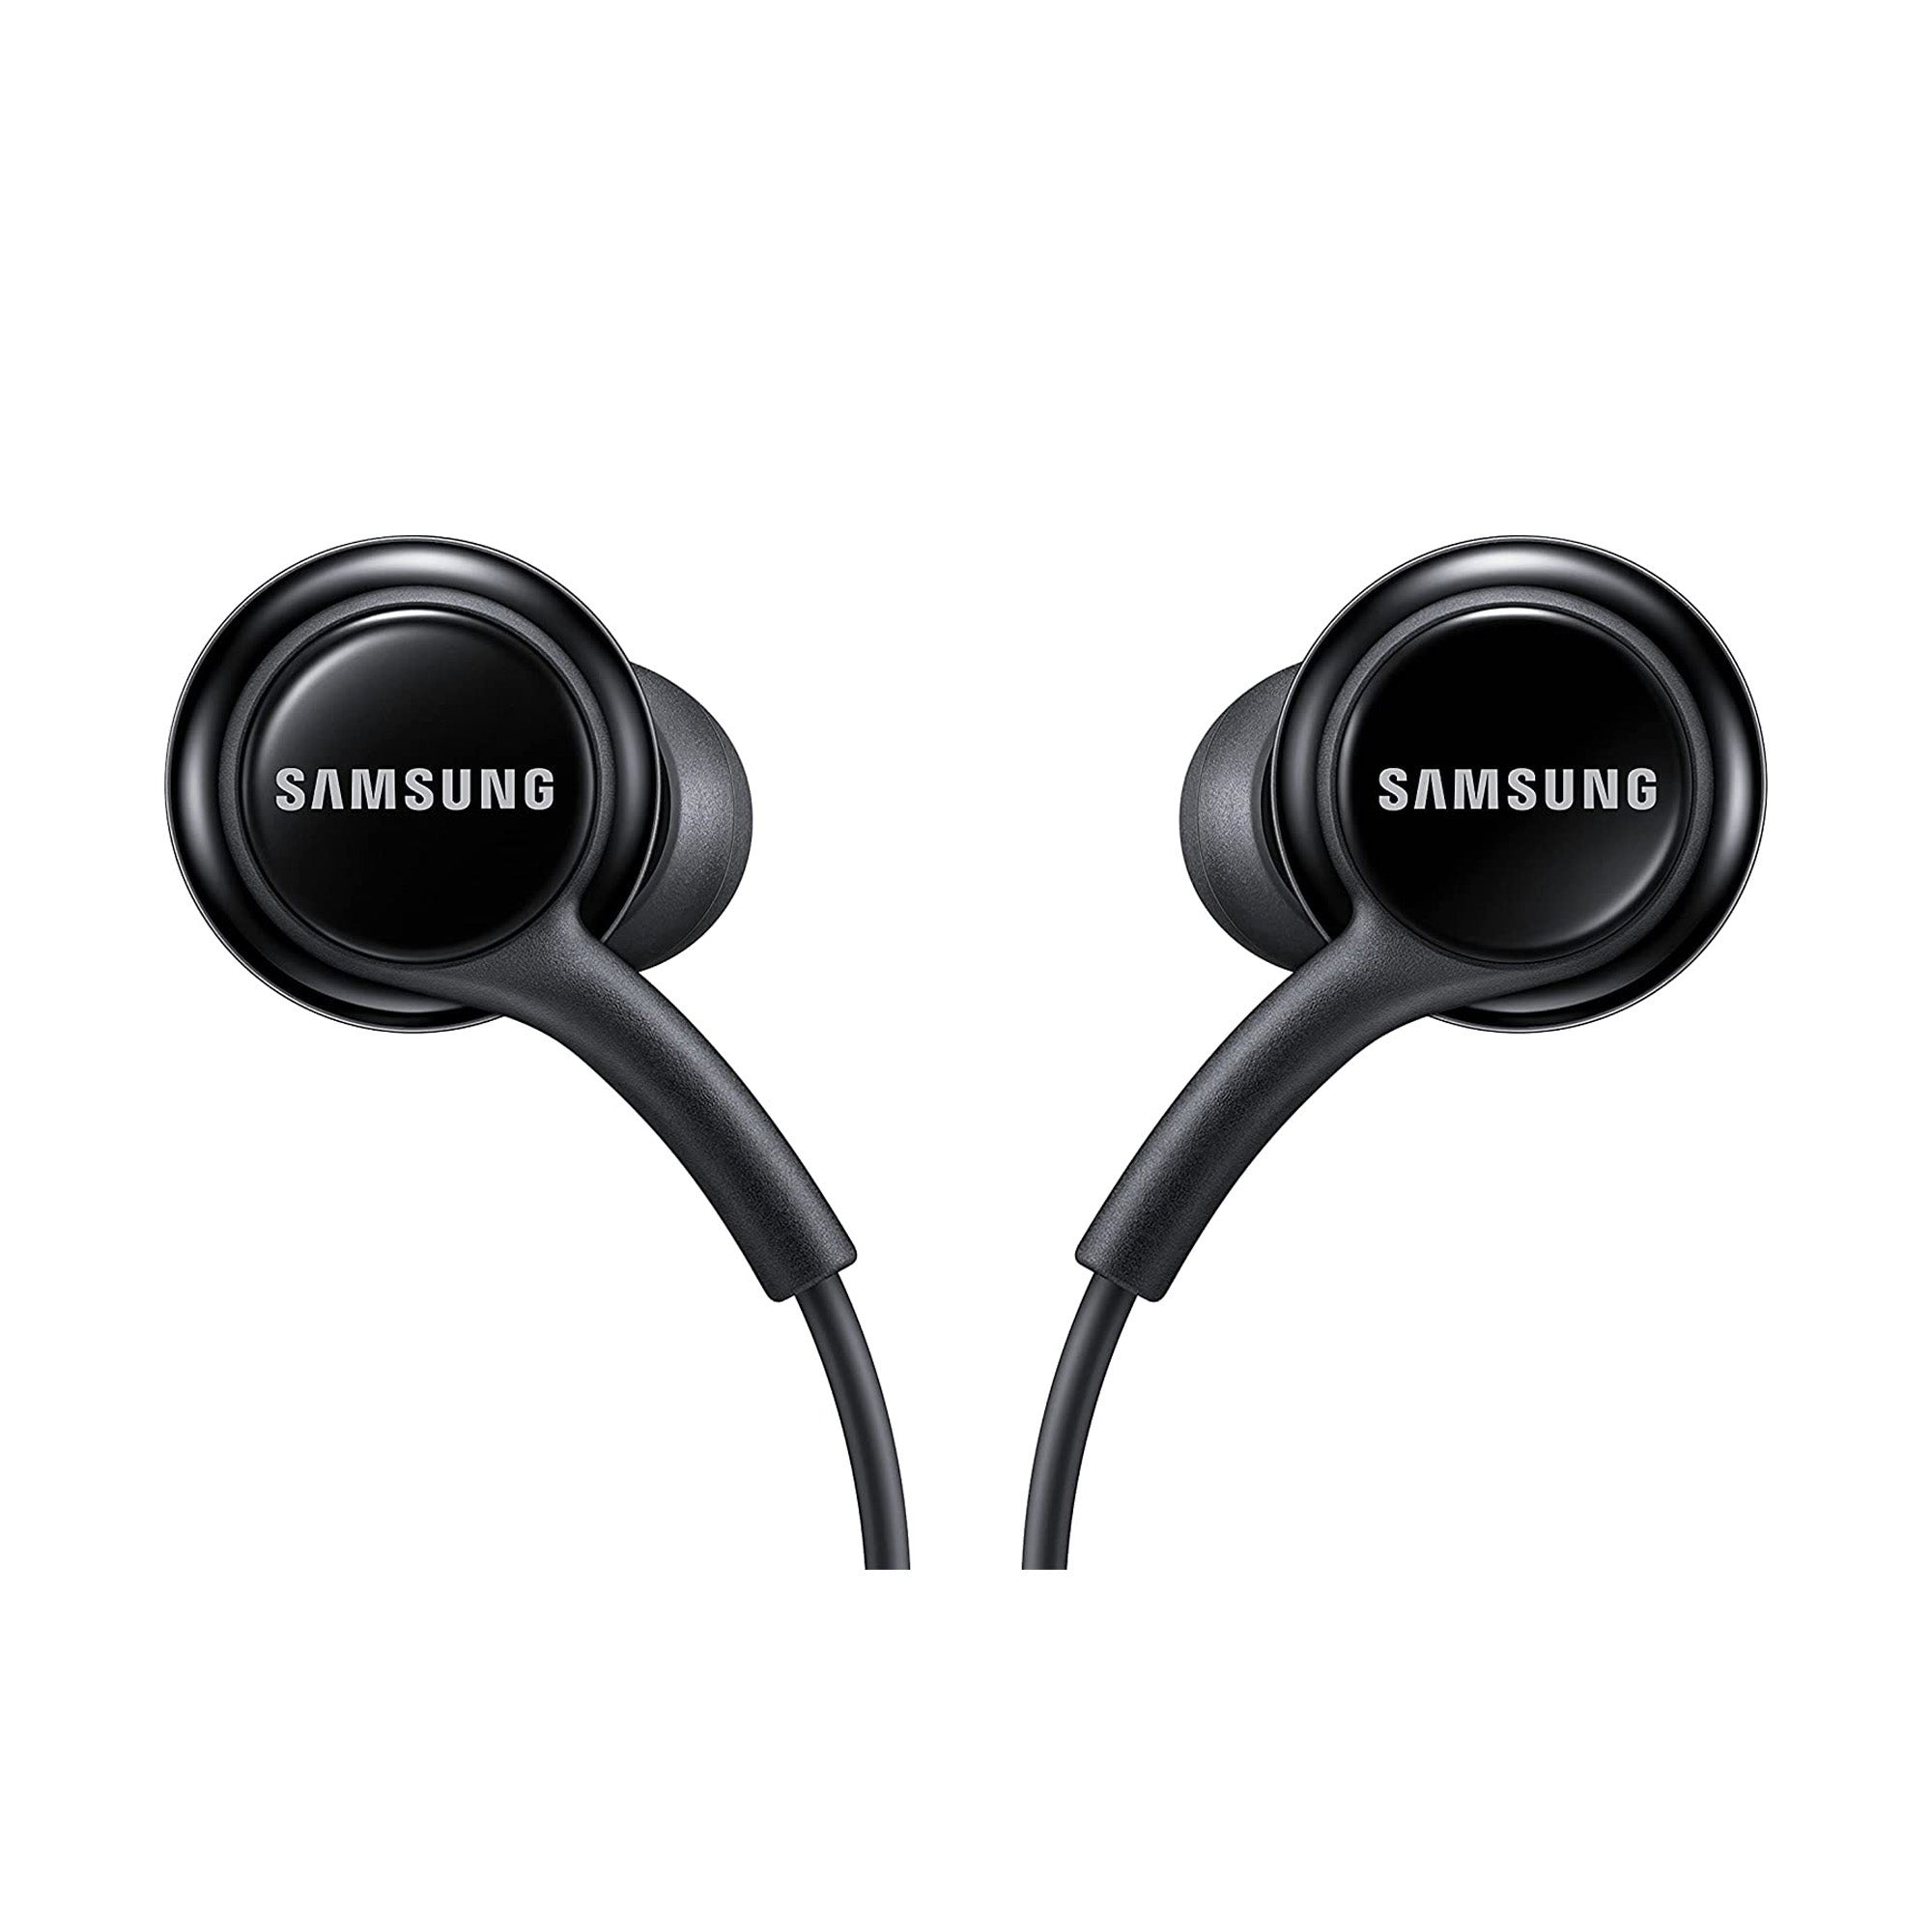 Samsung OEM 3.5mm Wired Headphones - 15-10036